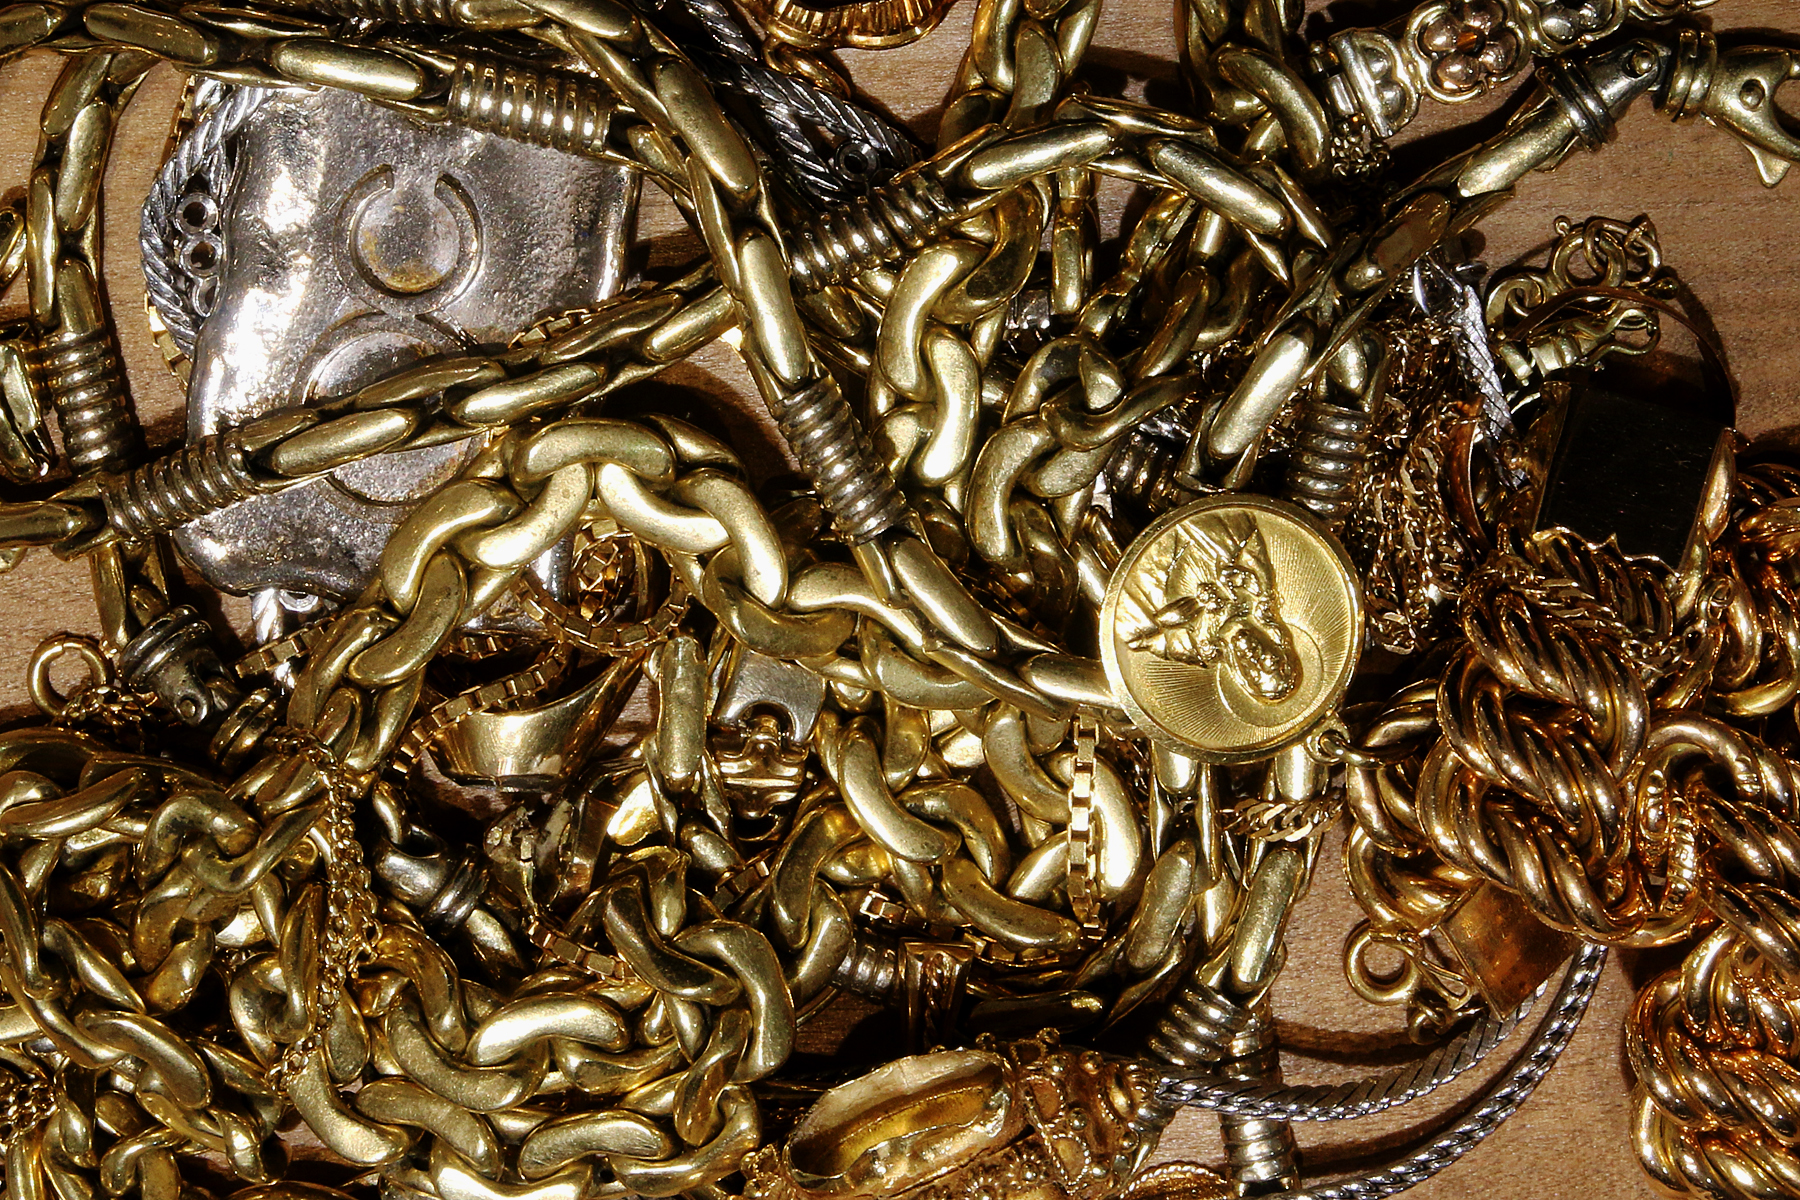 Goud kopen Antwerpen - Gold Company kopen Antwerpen